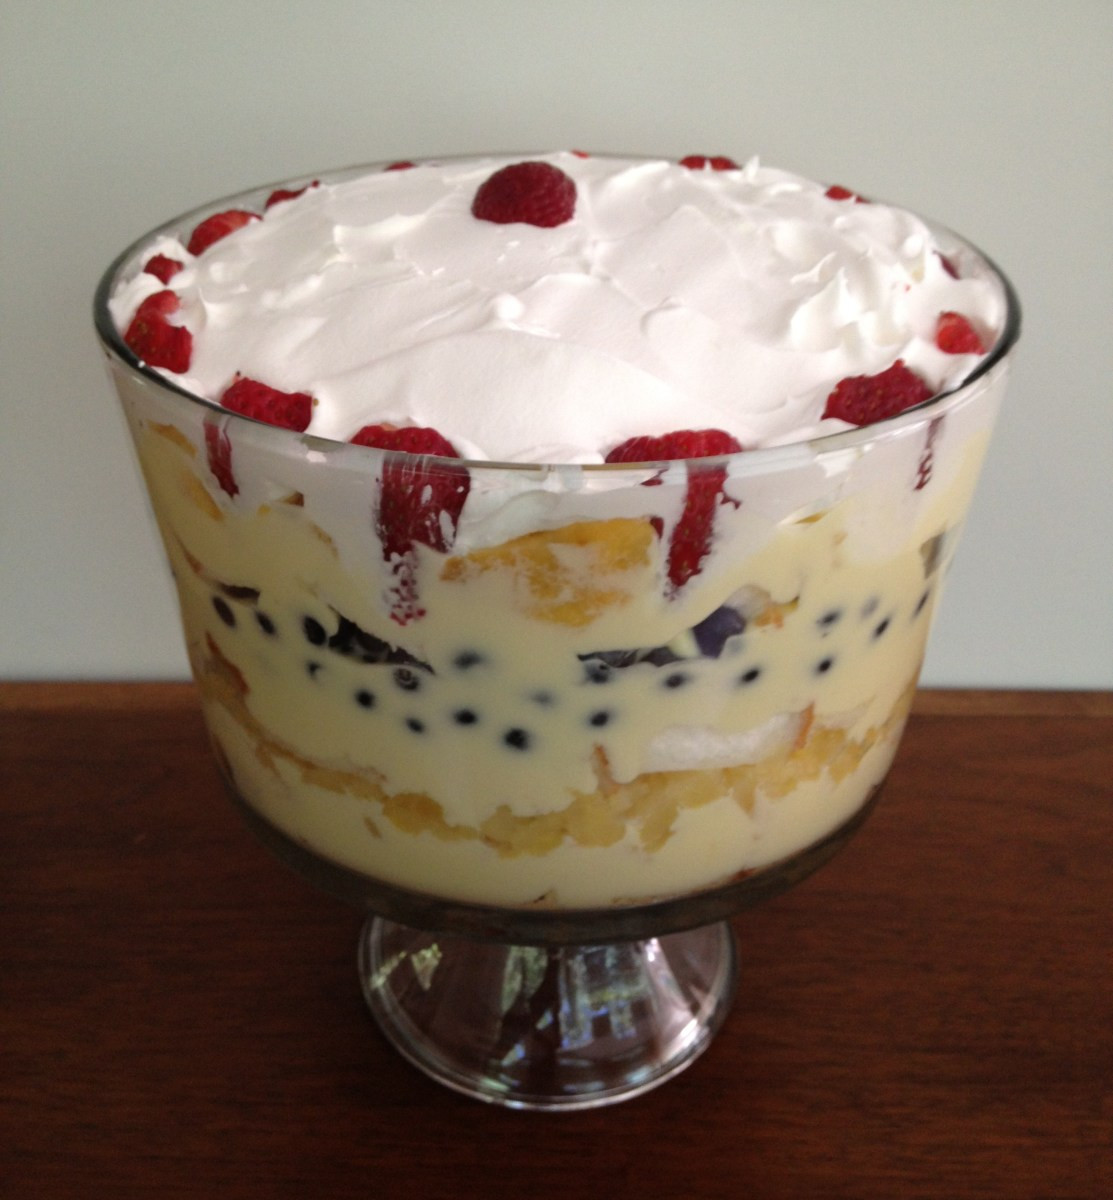 Summer Trifle Desserts
 Easy Desserts Summer Fruit Trifle Recipe